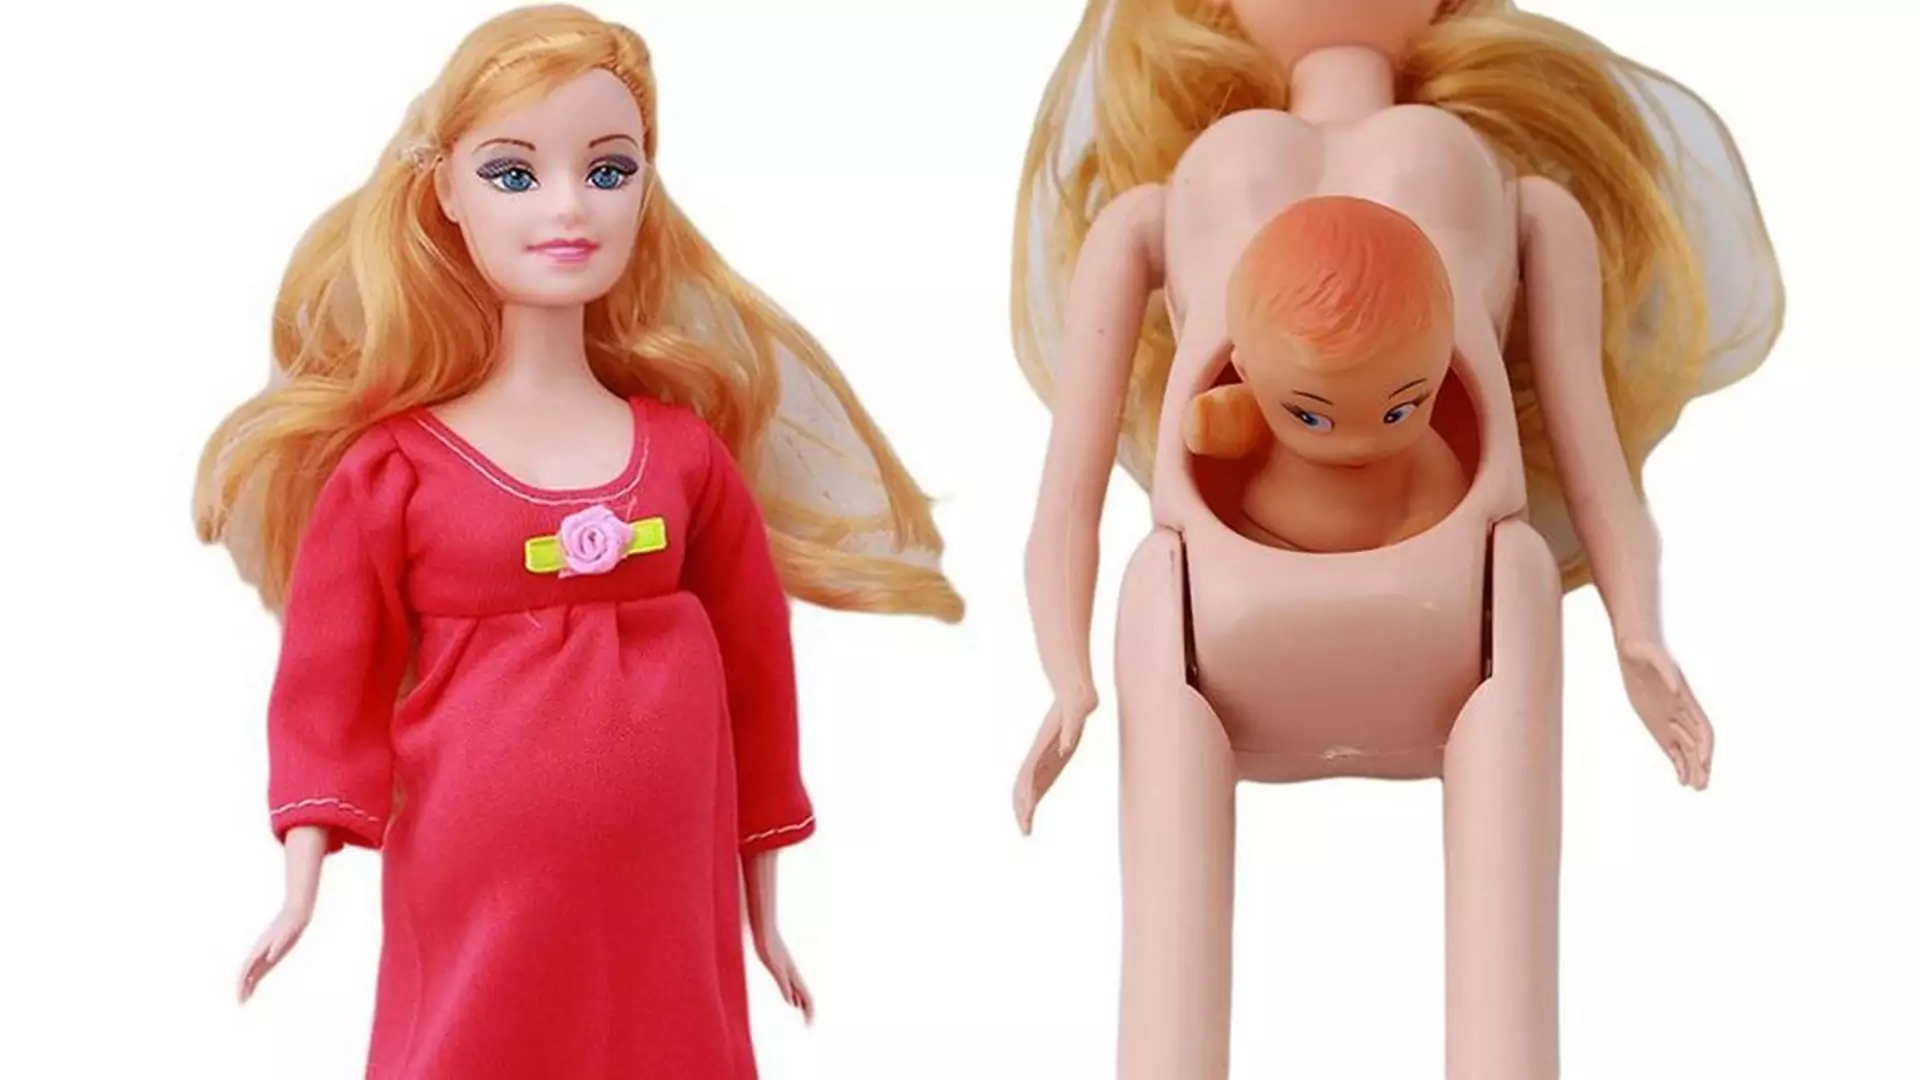 W sprzedaży pojawiła się Barbie w ciąży...i od razu wzbudziła spore kontrowersje